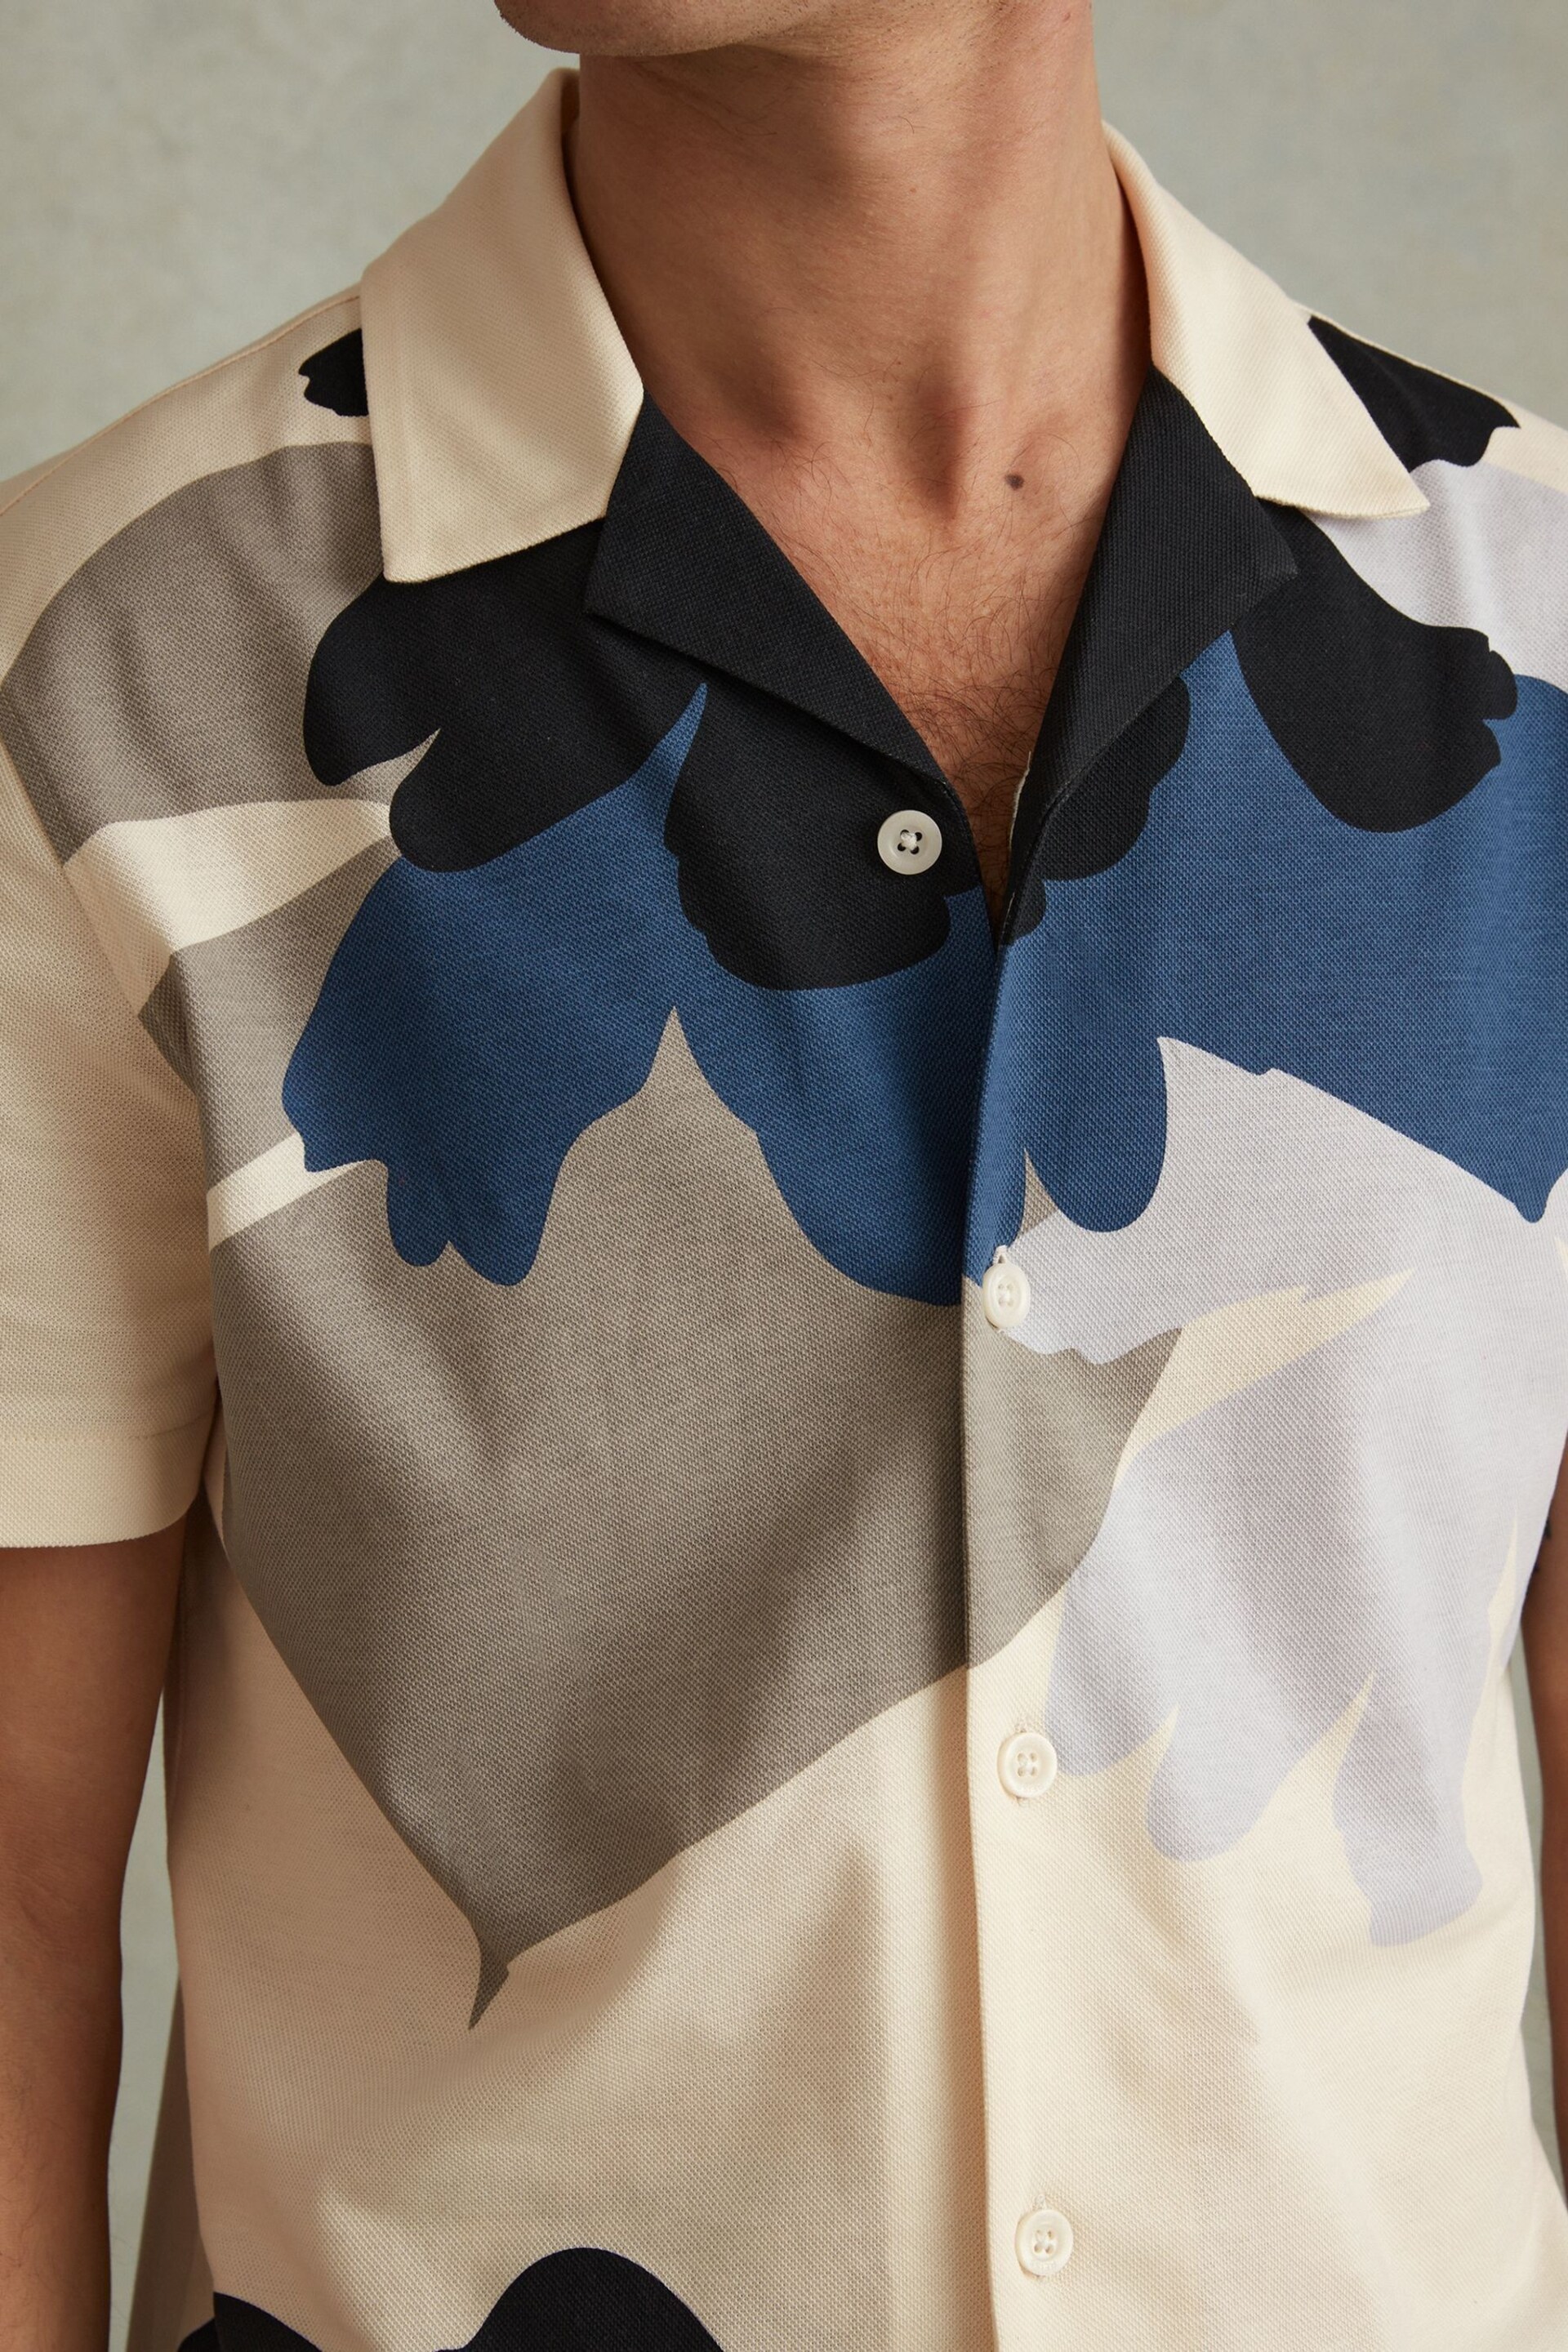 Reiss Blue Multi Parc Cotton Floral Print Cuban Collar Shirt - Image 3 of 6